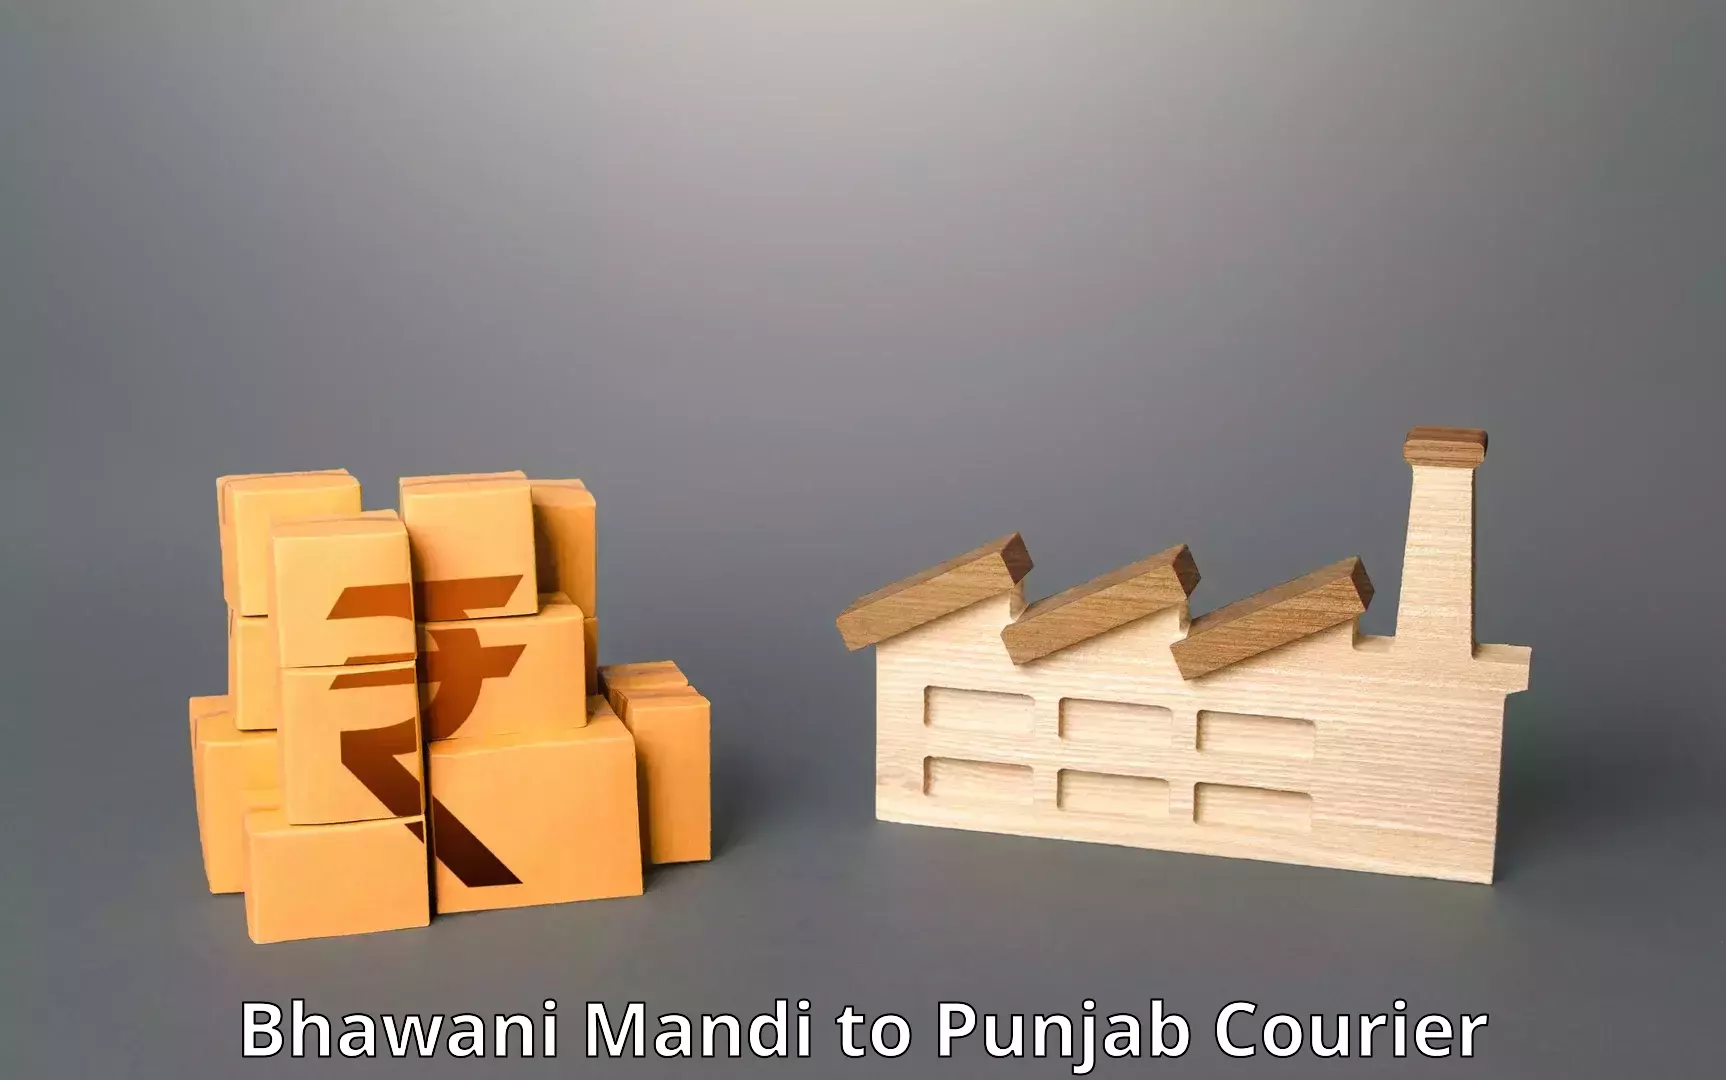 Urgent courier needs Bhawani Mandi to Mandi Gobindgarh